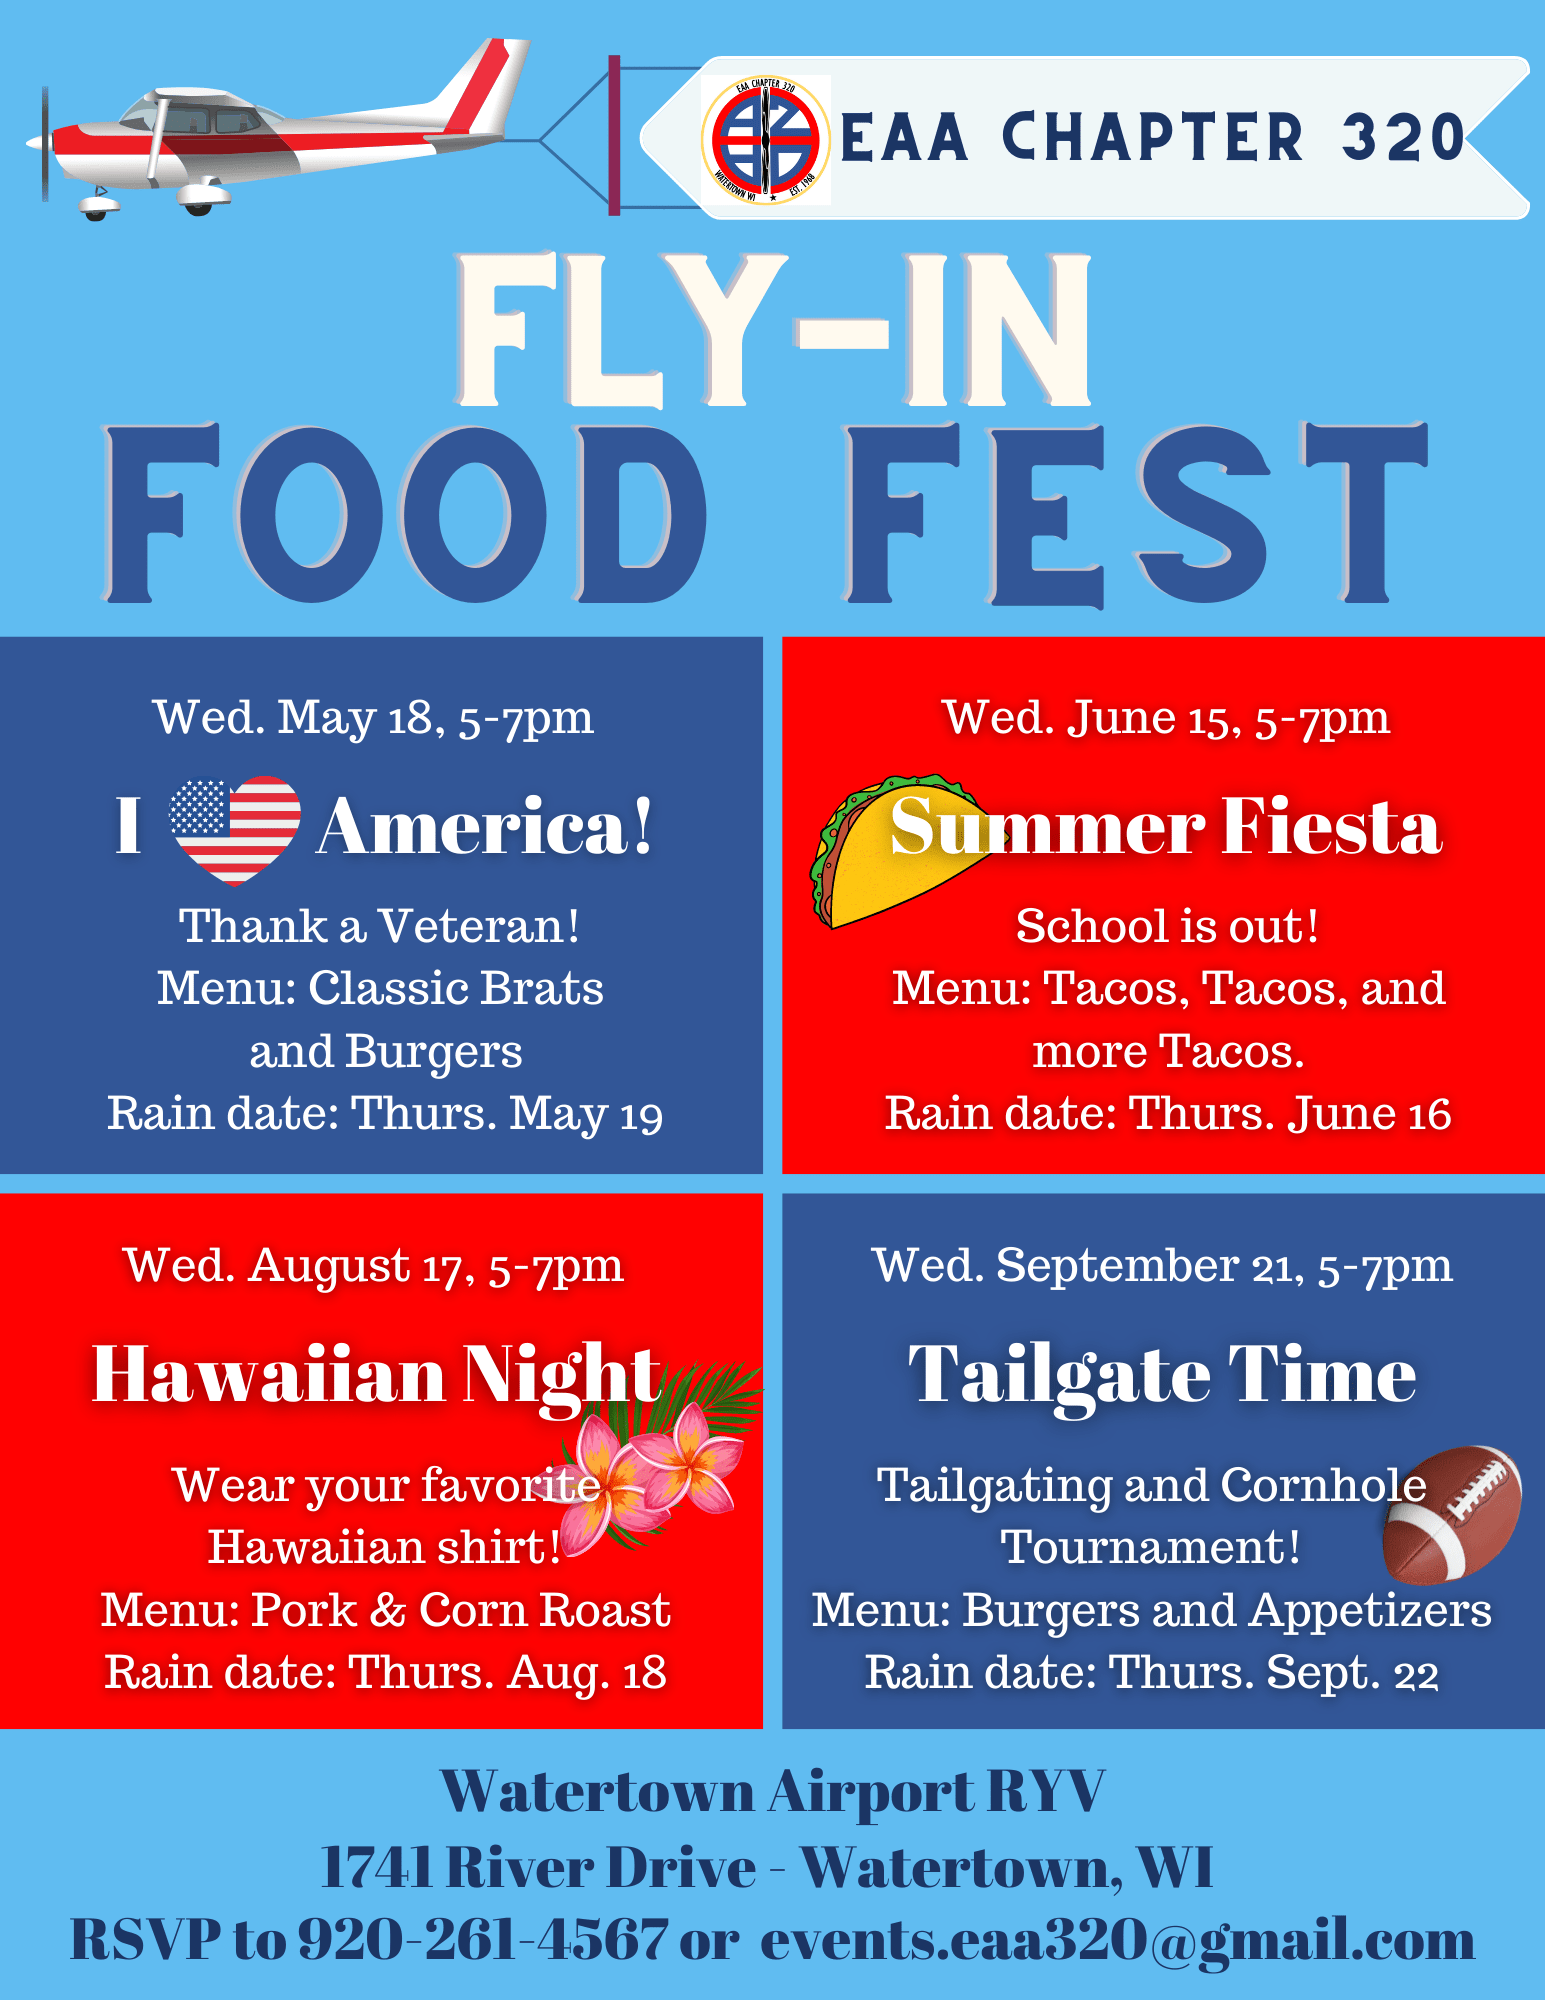 Fly-in food fest flyer in Watertown